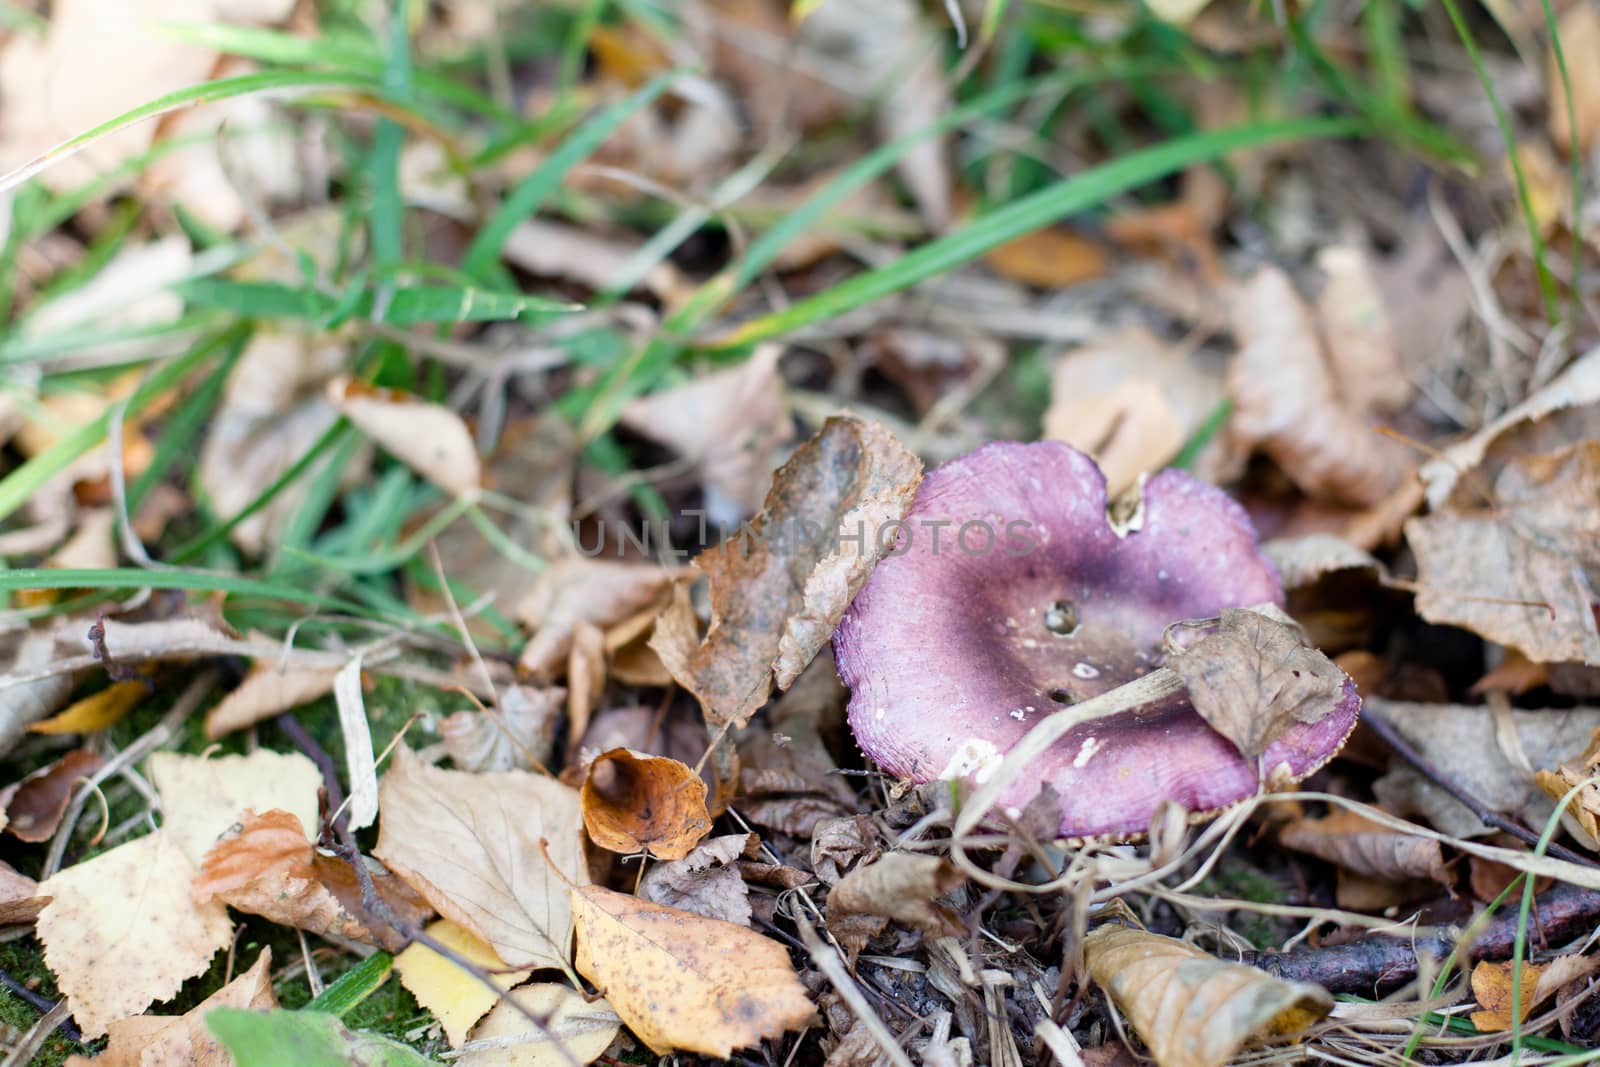 Purple mushroom by foaloce